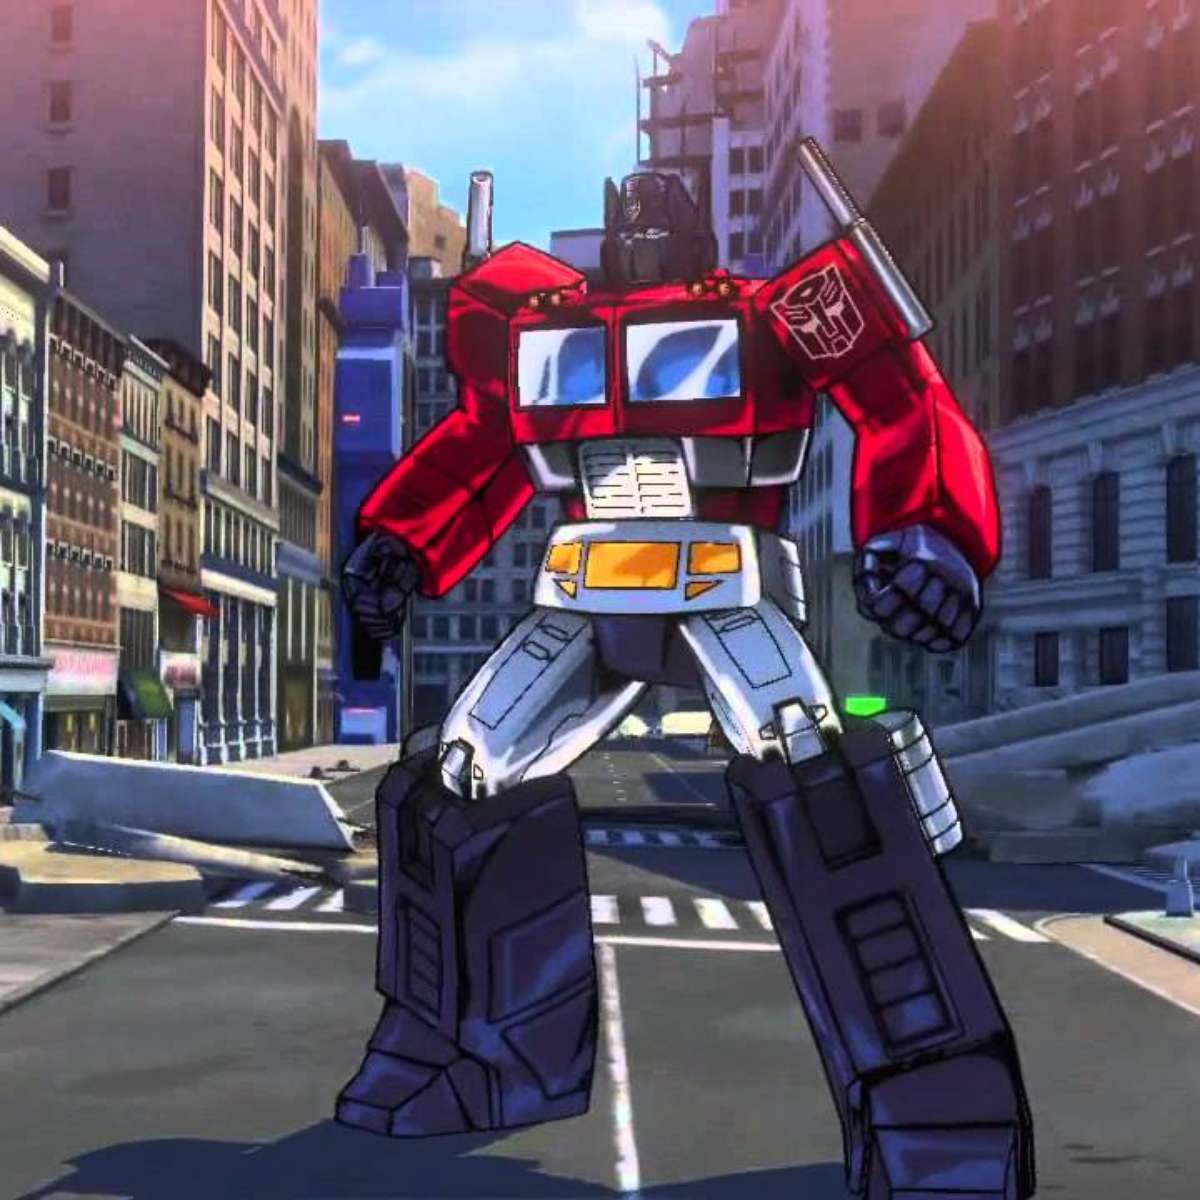 Transformers 7 é removido da programação de lançamentos da Paramount